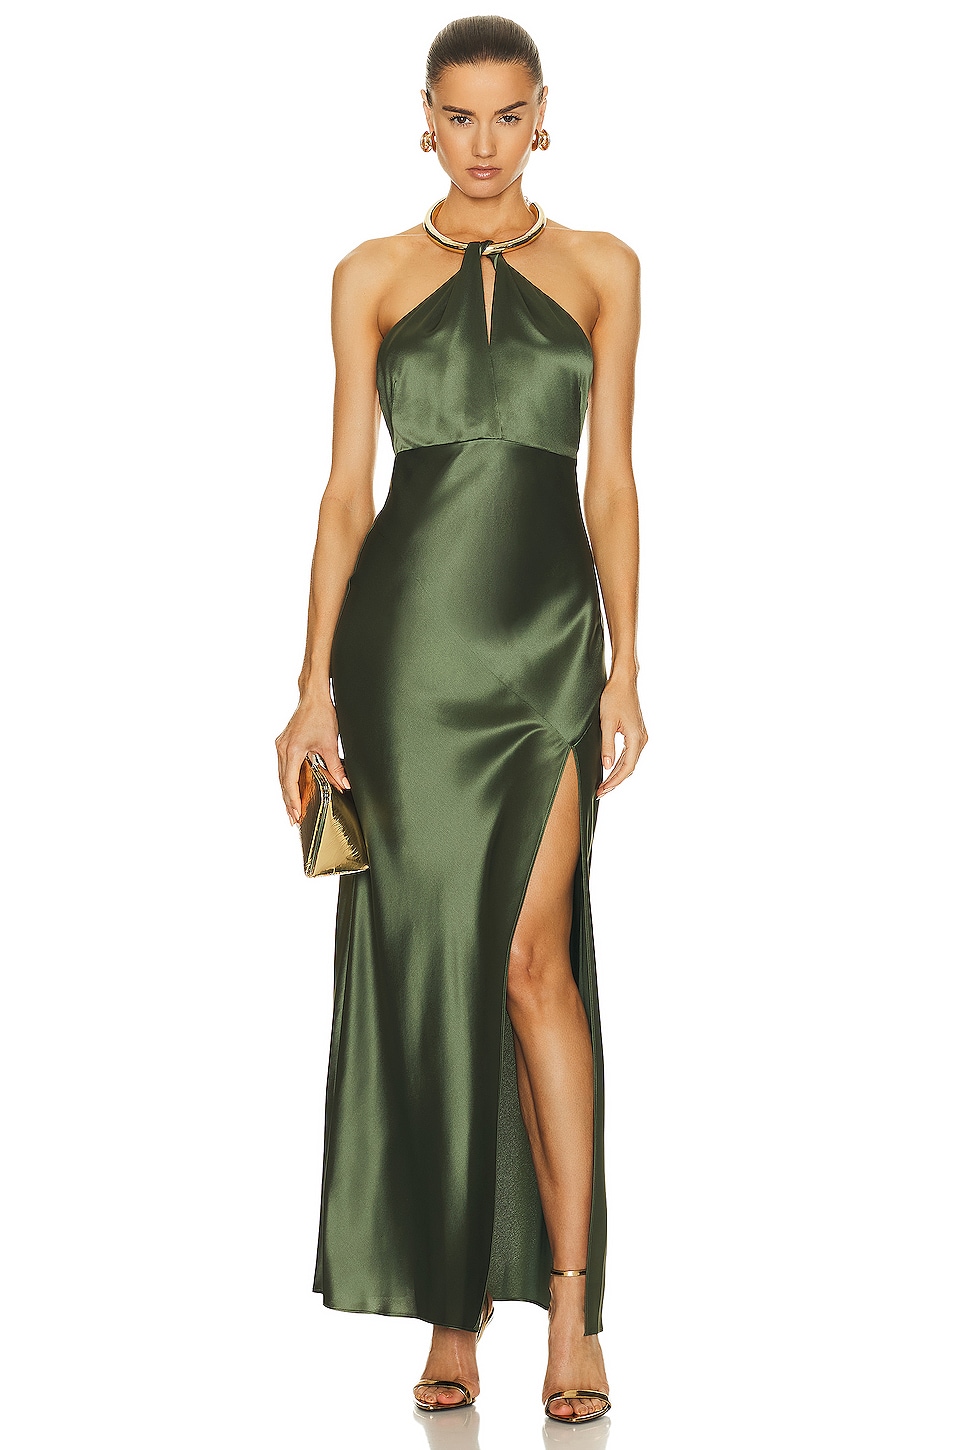 Designer | NICHOLAS | Luxury Dresses & Clothing | FWRD